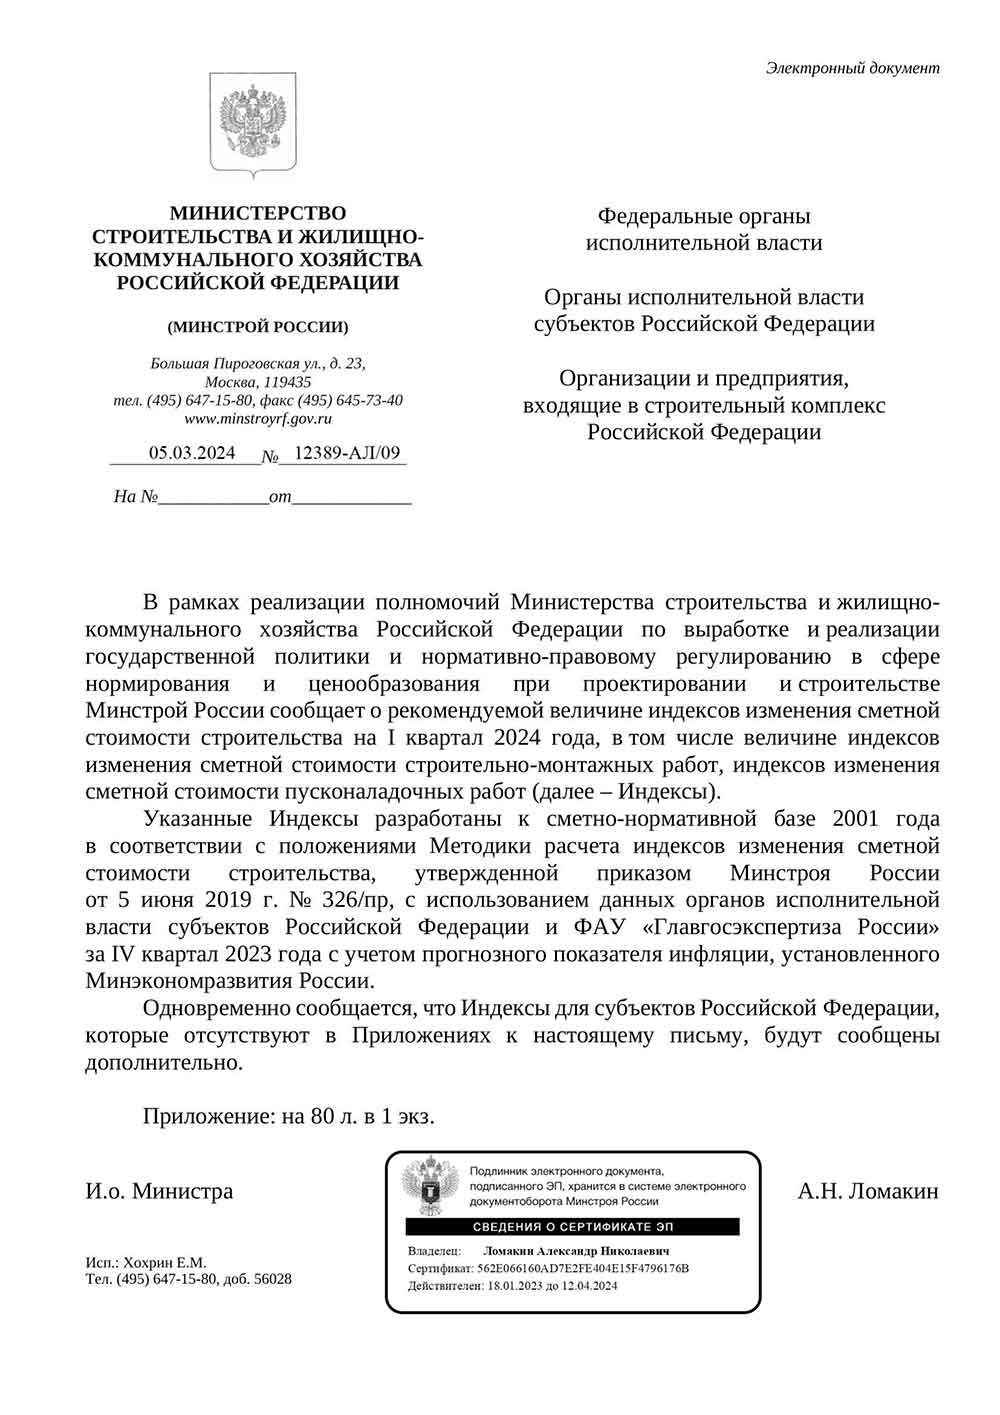 Письмо Минстроя РФ №12389-АЛ/09 от 05.03.2024 г.